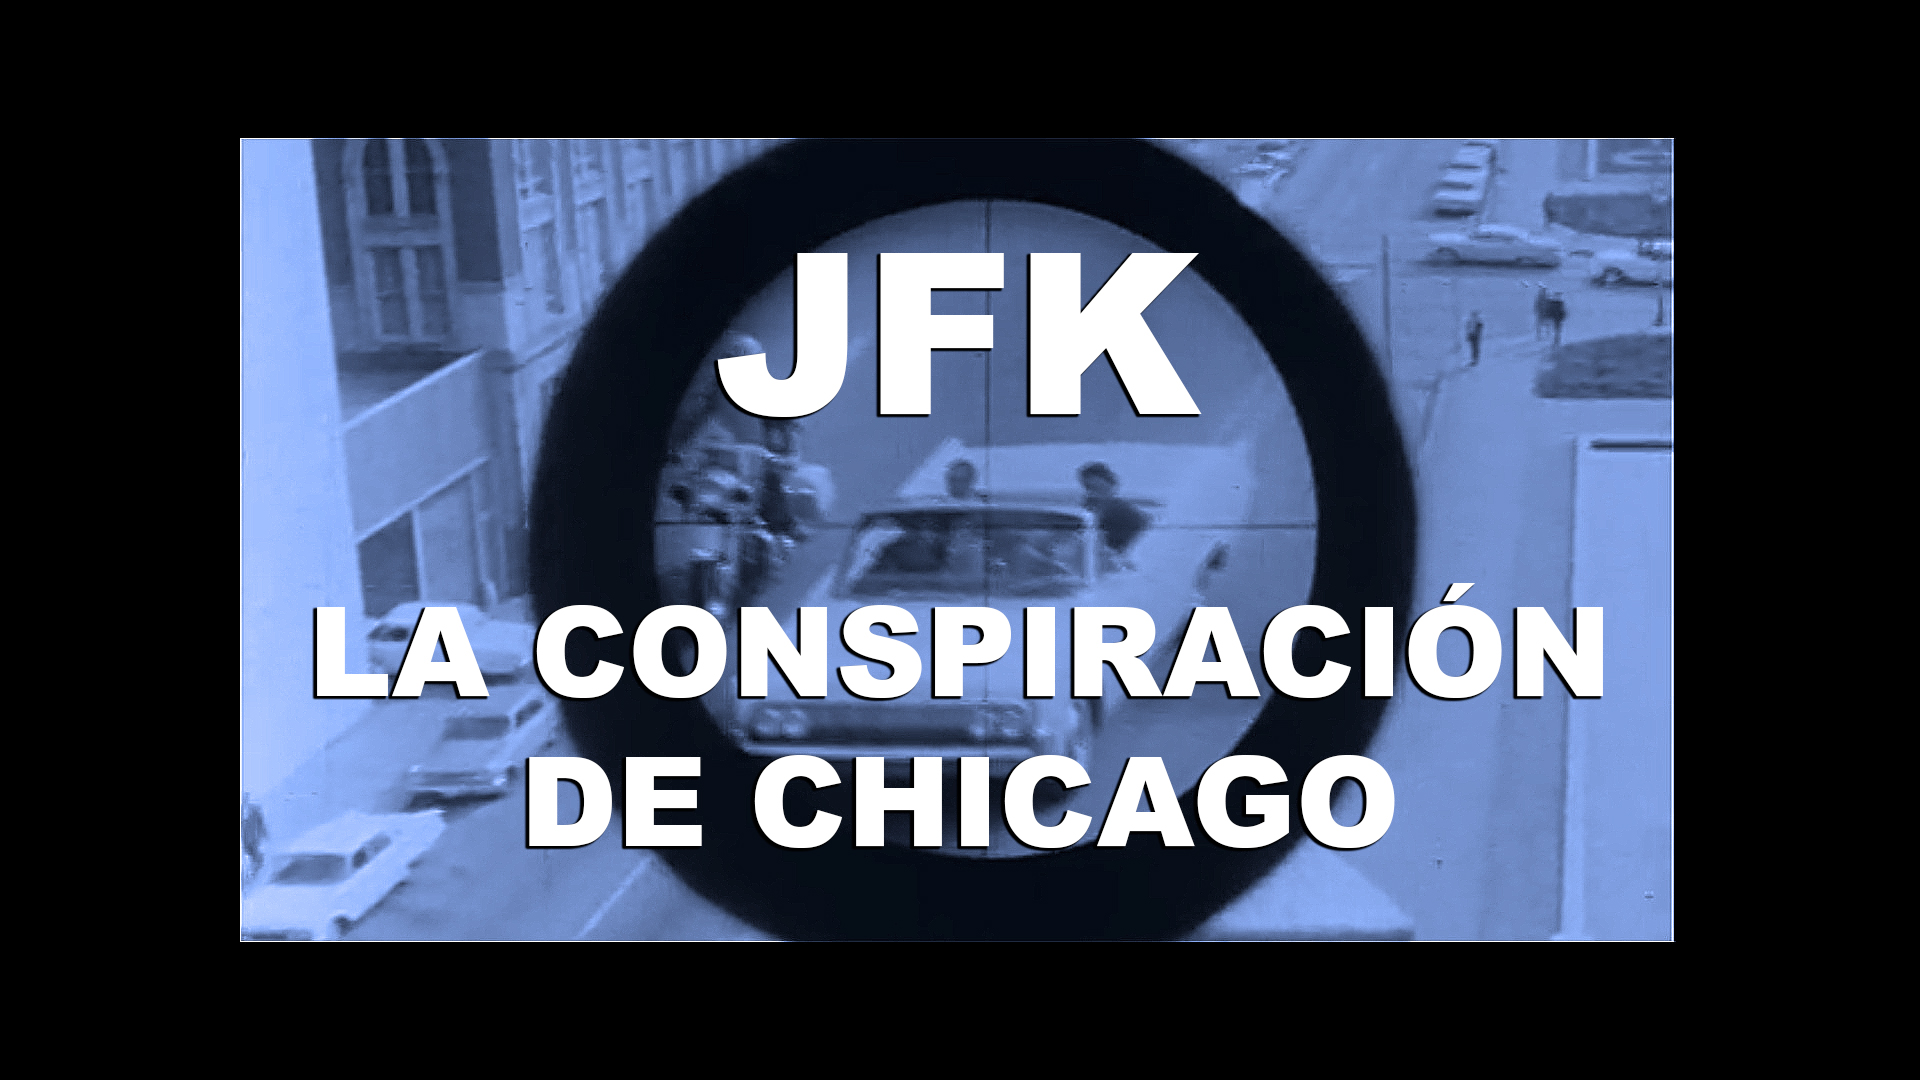 JFK: LA CONSPIRACIÓN DE CHICAGO